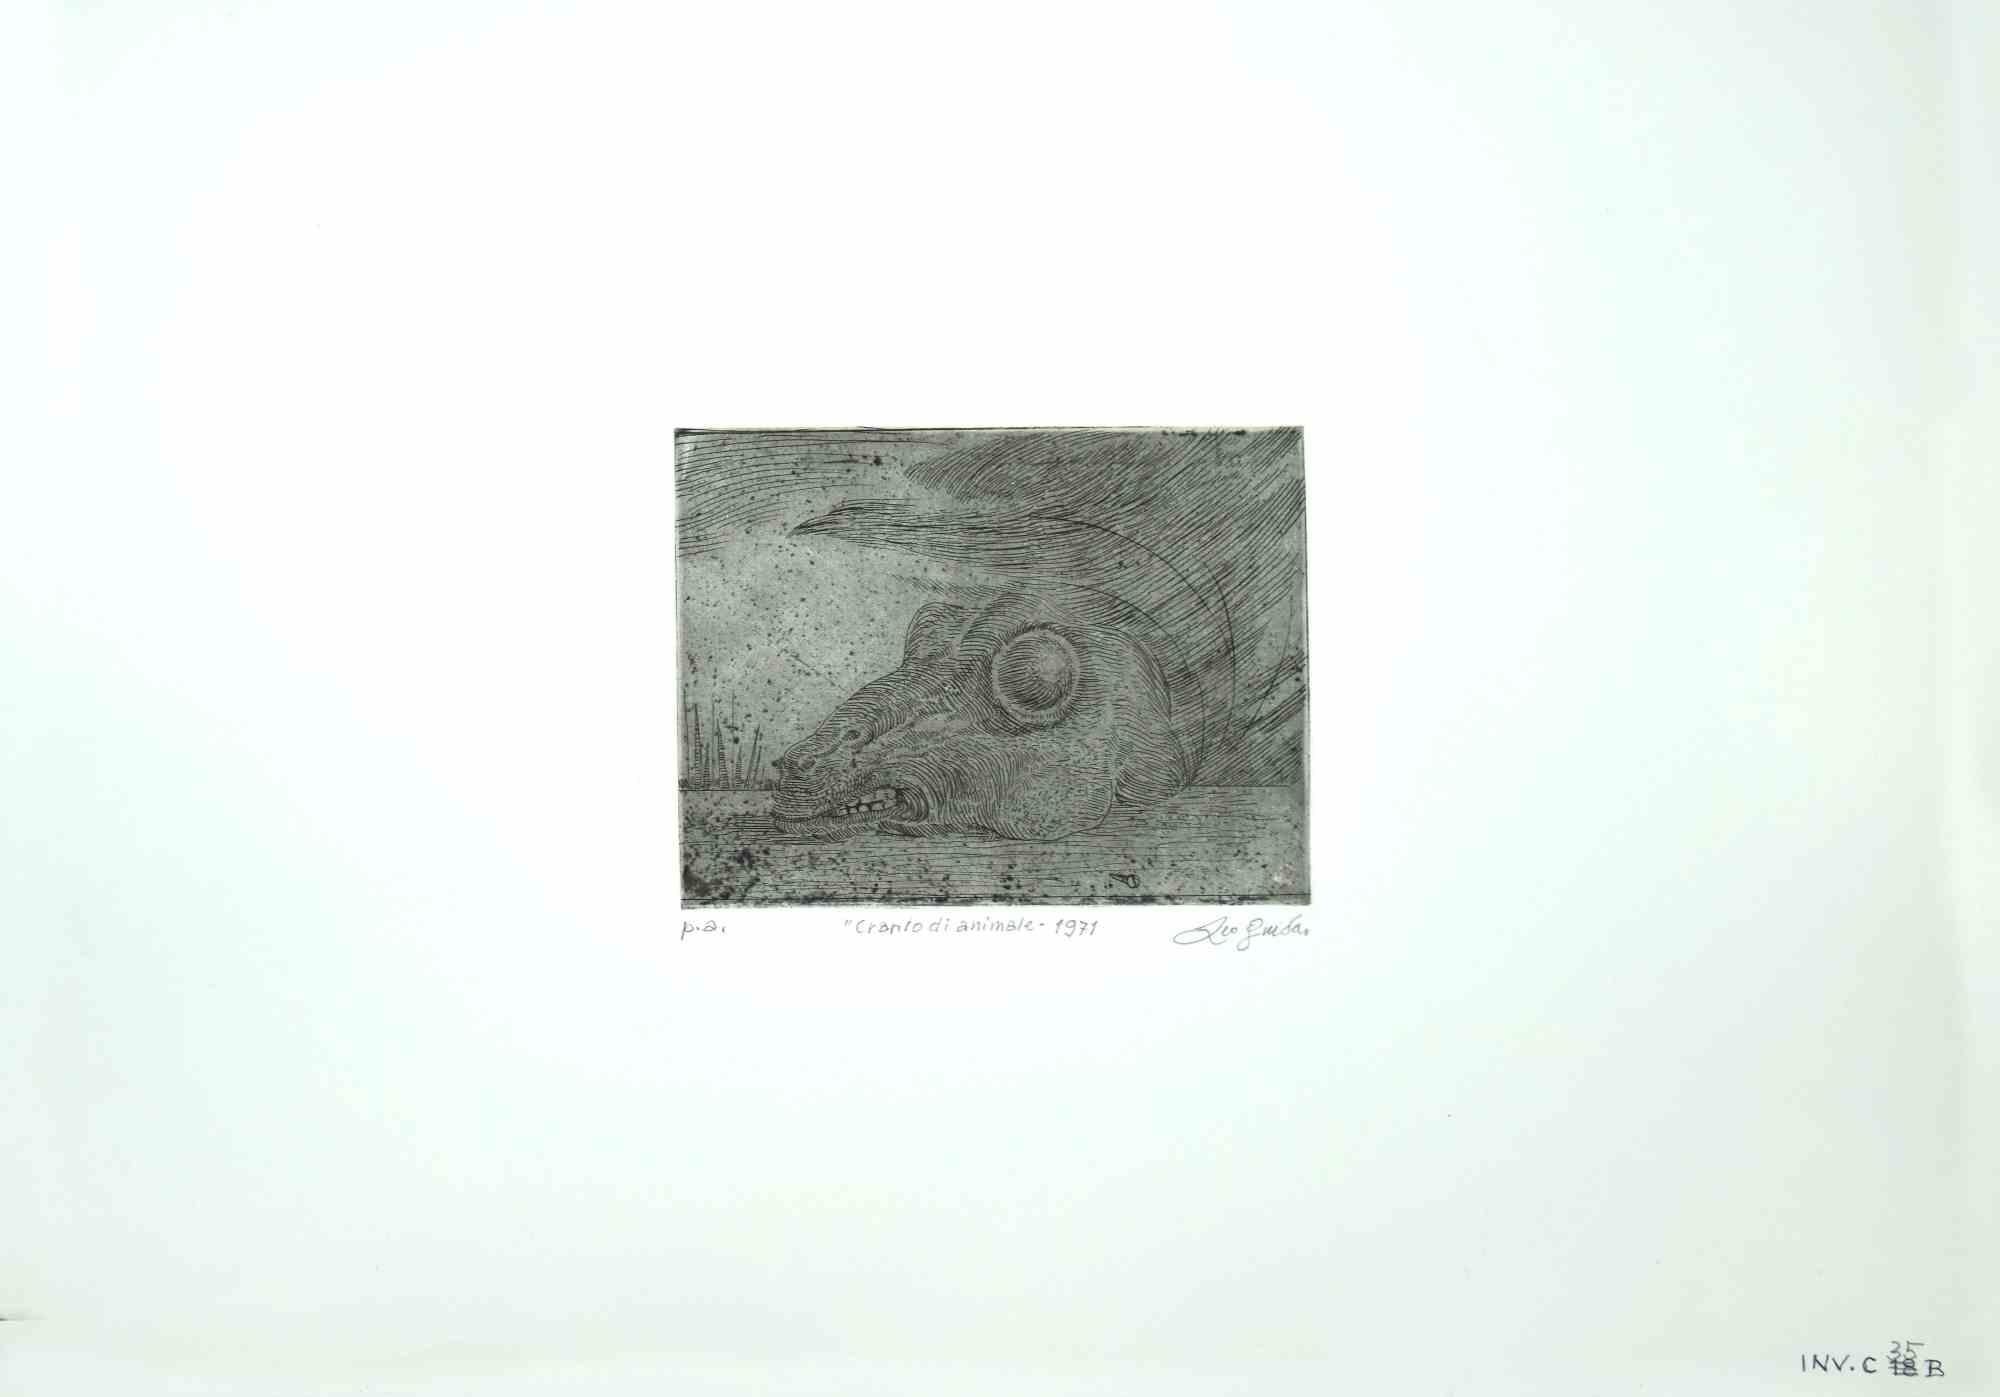 Animal Skull ist ein Original-Kunstwerk realisiert  im Jahr 1971  von dem italienischen zeitgenössischen Künstler  Leo Guida  (1992 - 2017).

Schwarze und weiße Originalradierung auf elfenbeinfarbenem Karton.

Am unteren Rand handsigniert, betitelt